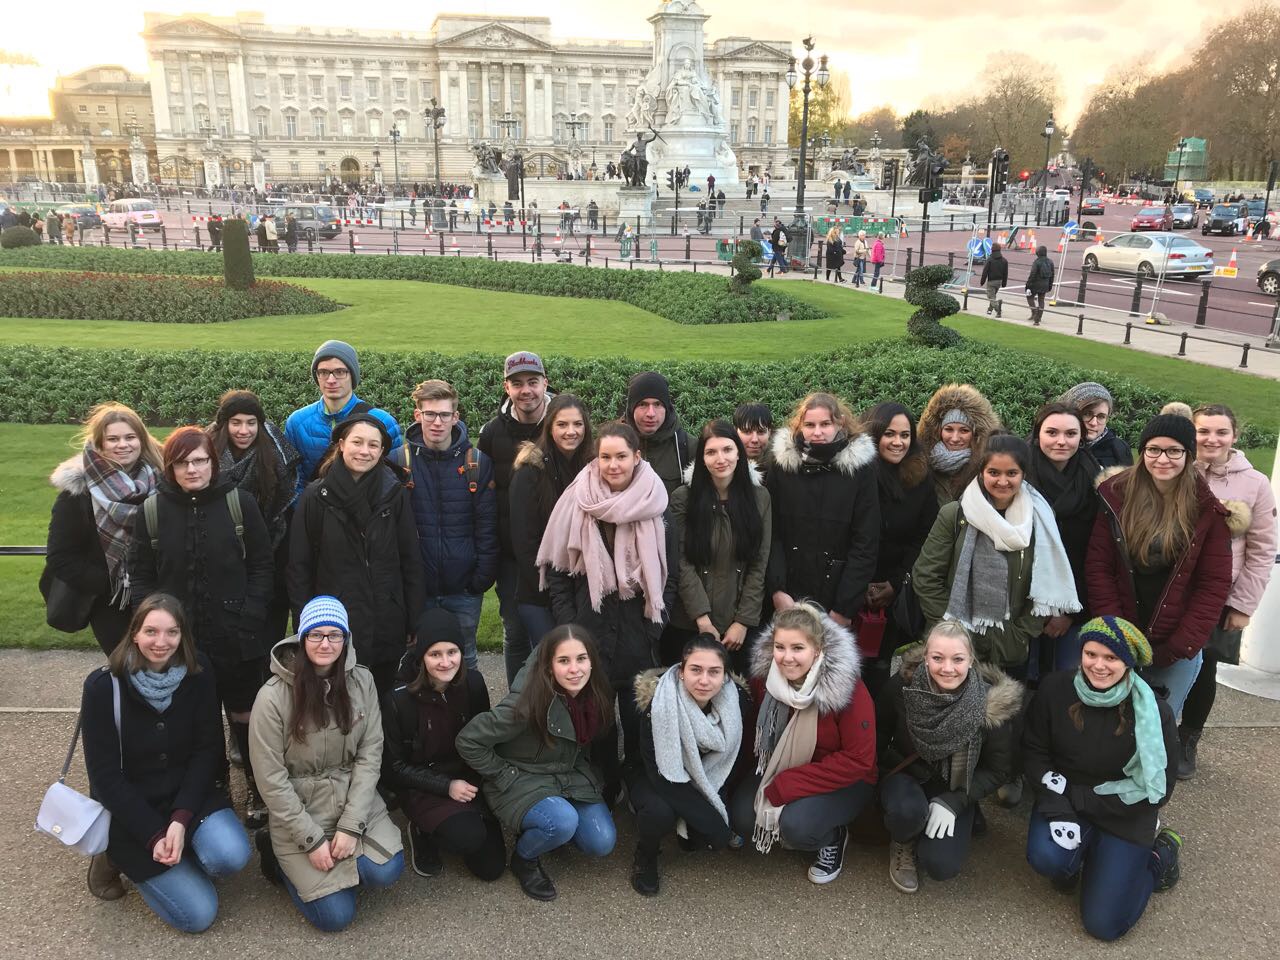 Gruppenfoto vor dem Buckingham Palace